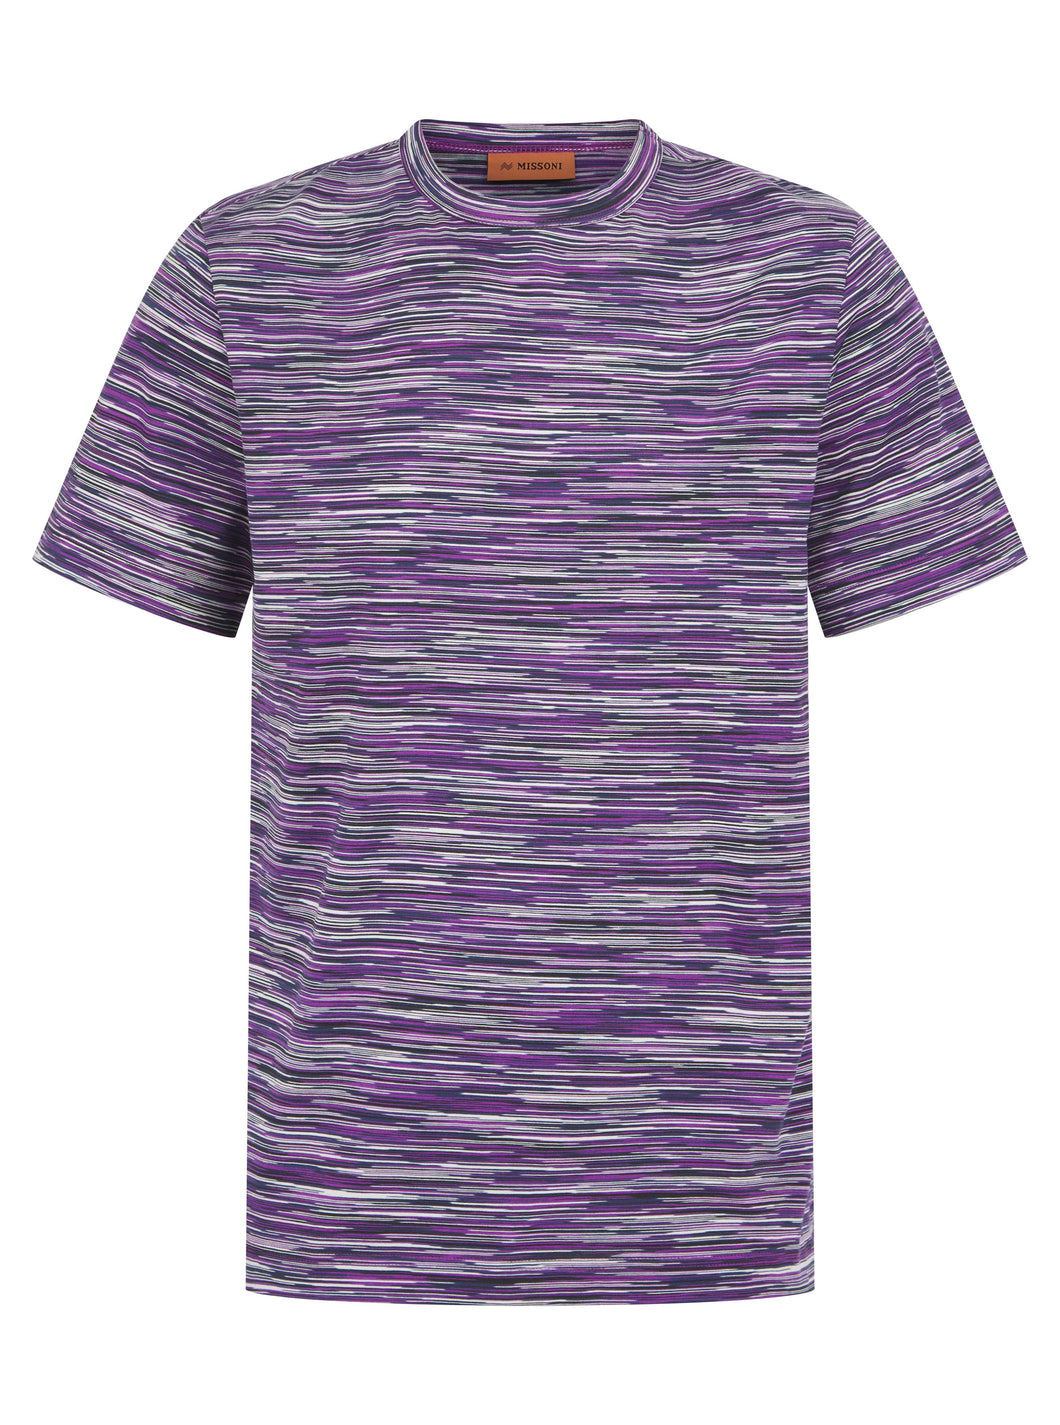 Missoni Stripe T Shirt Purple